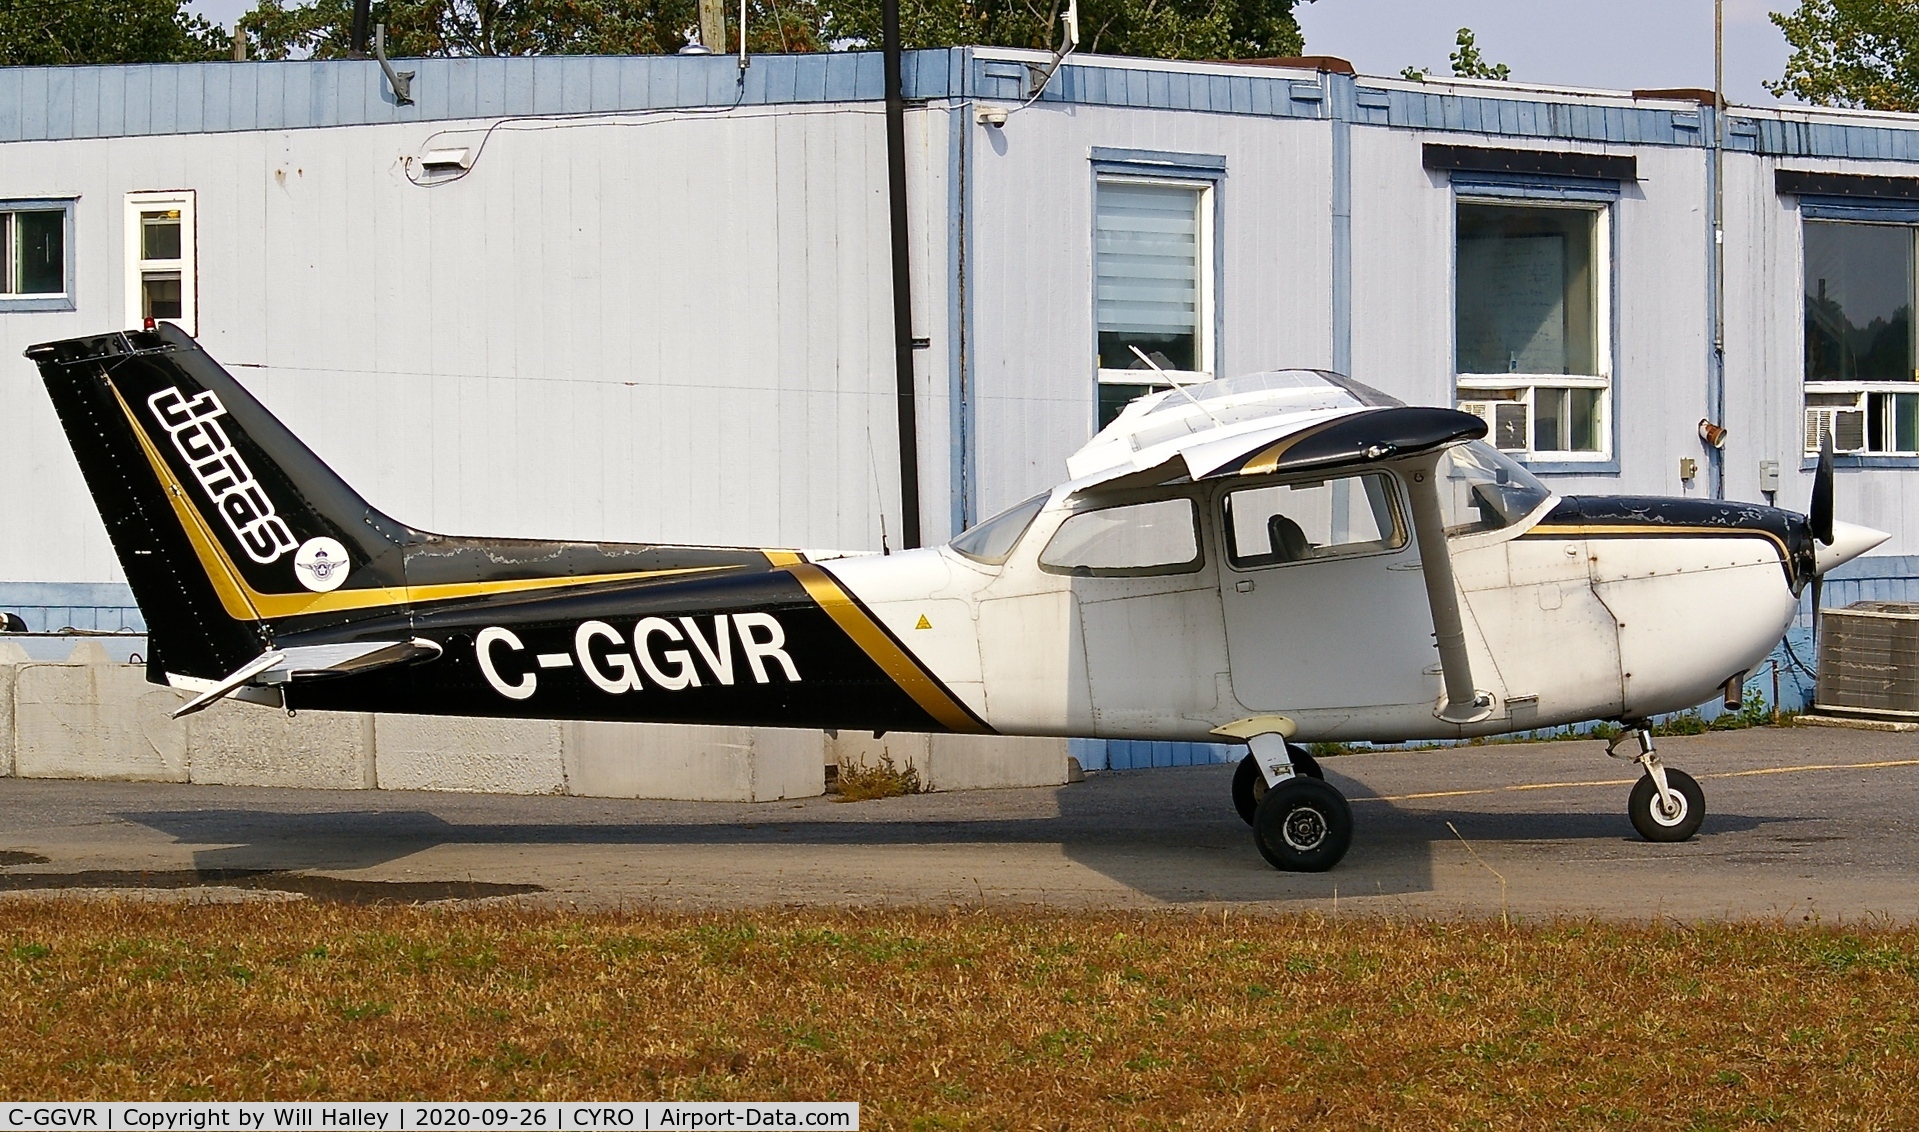 C-GGVR, 1976 Cessna 172M C/N 172-65974, Rockcliffe Flying Club C-GGVR at Rockcliffe